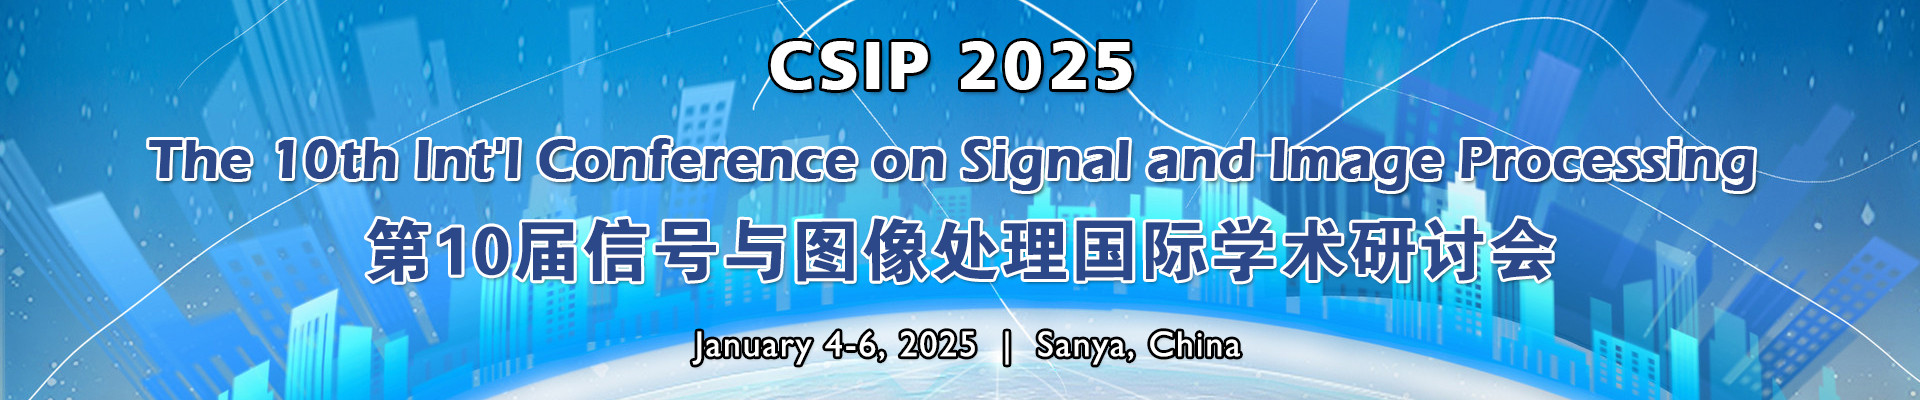 第十届信号与图像处理国际学术研讨会(CSIP 2025)